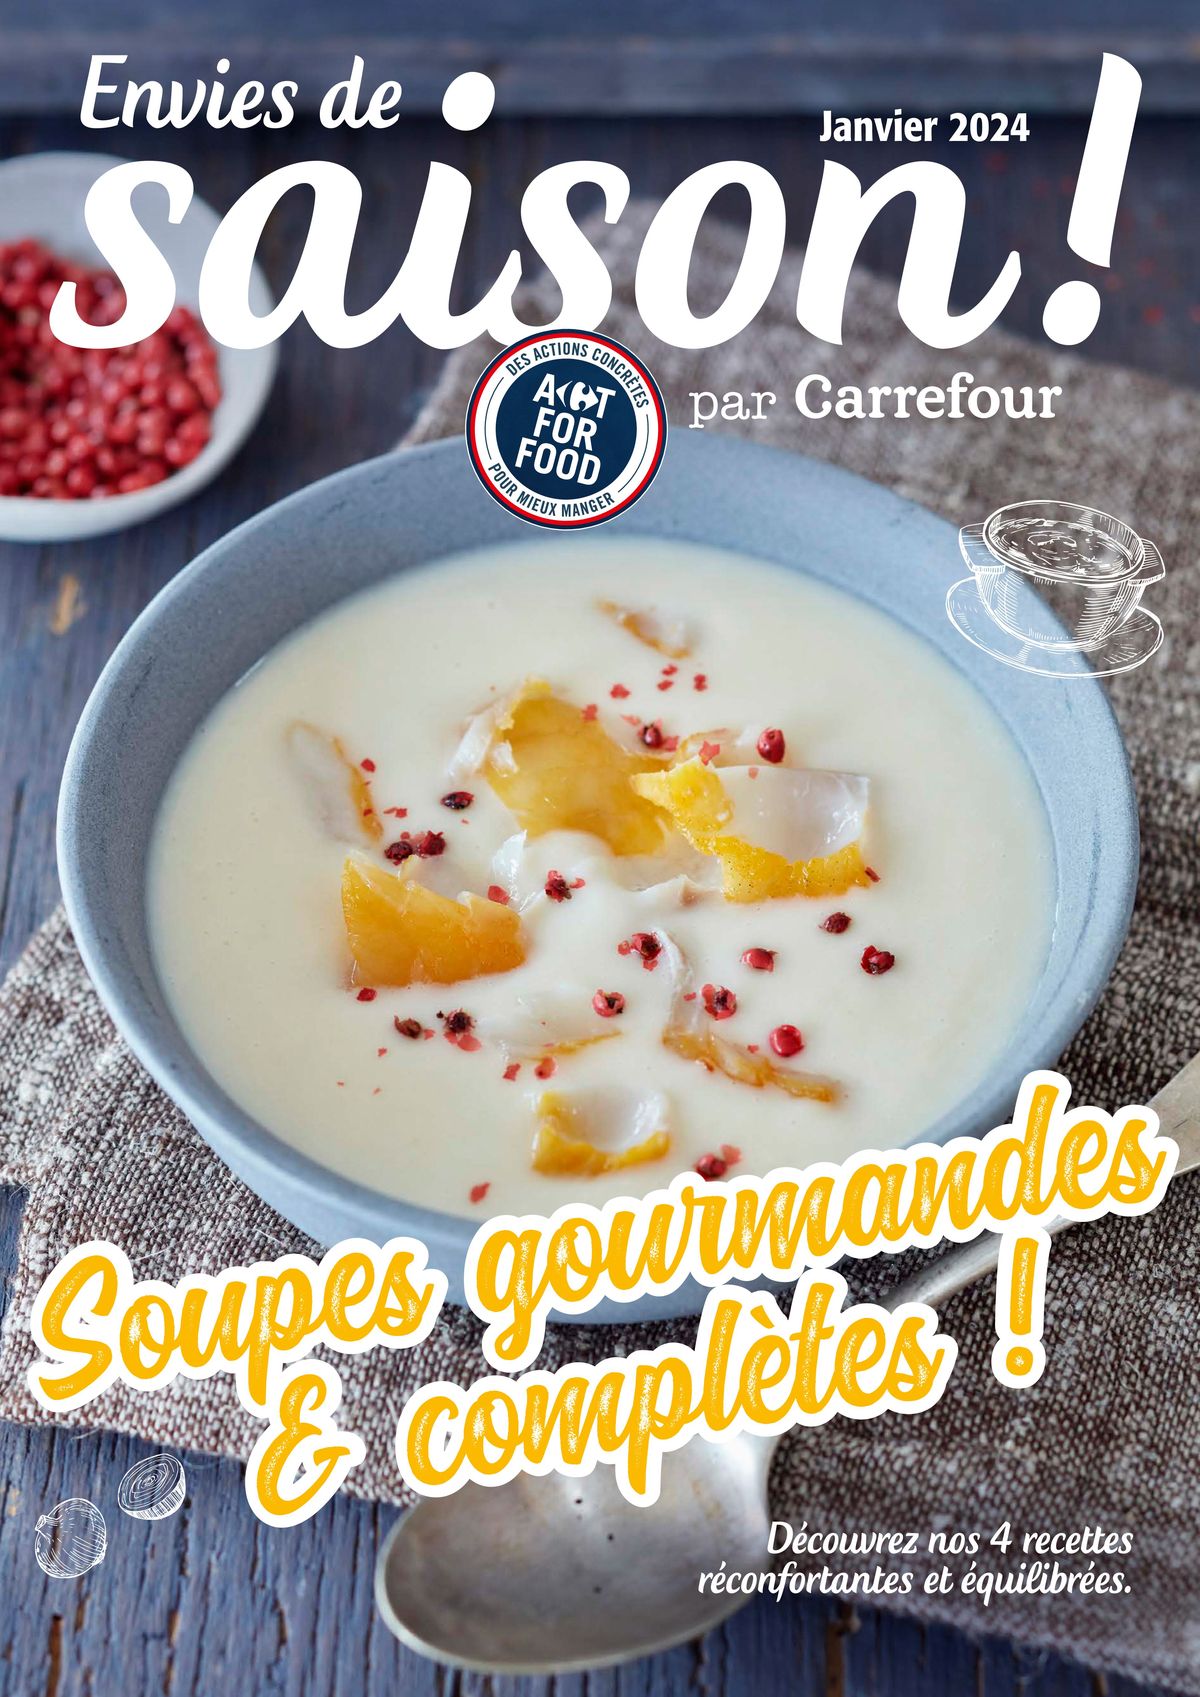 Catalogue Soupes gourmandes et complètes !, page 00001